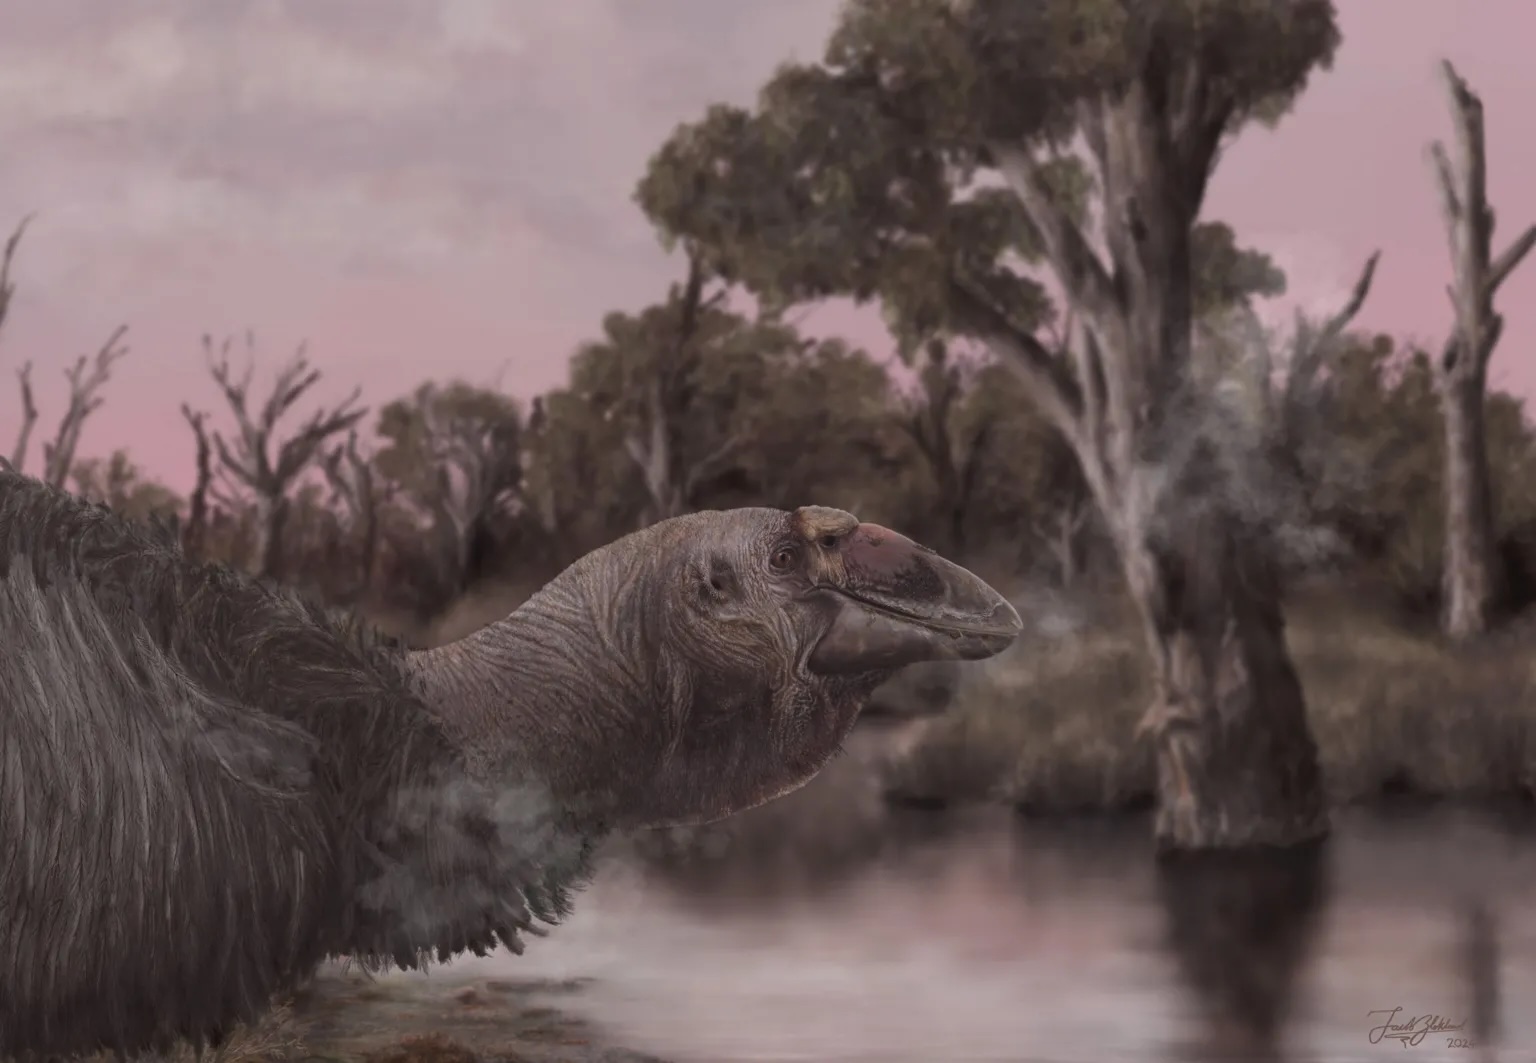 Megtalálták egy pleisztocénkori madár szinte teljesen ép állapotban fennmaradt koponyáját